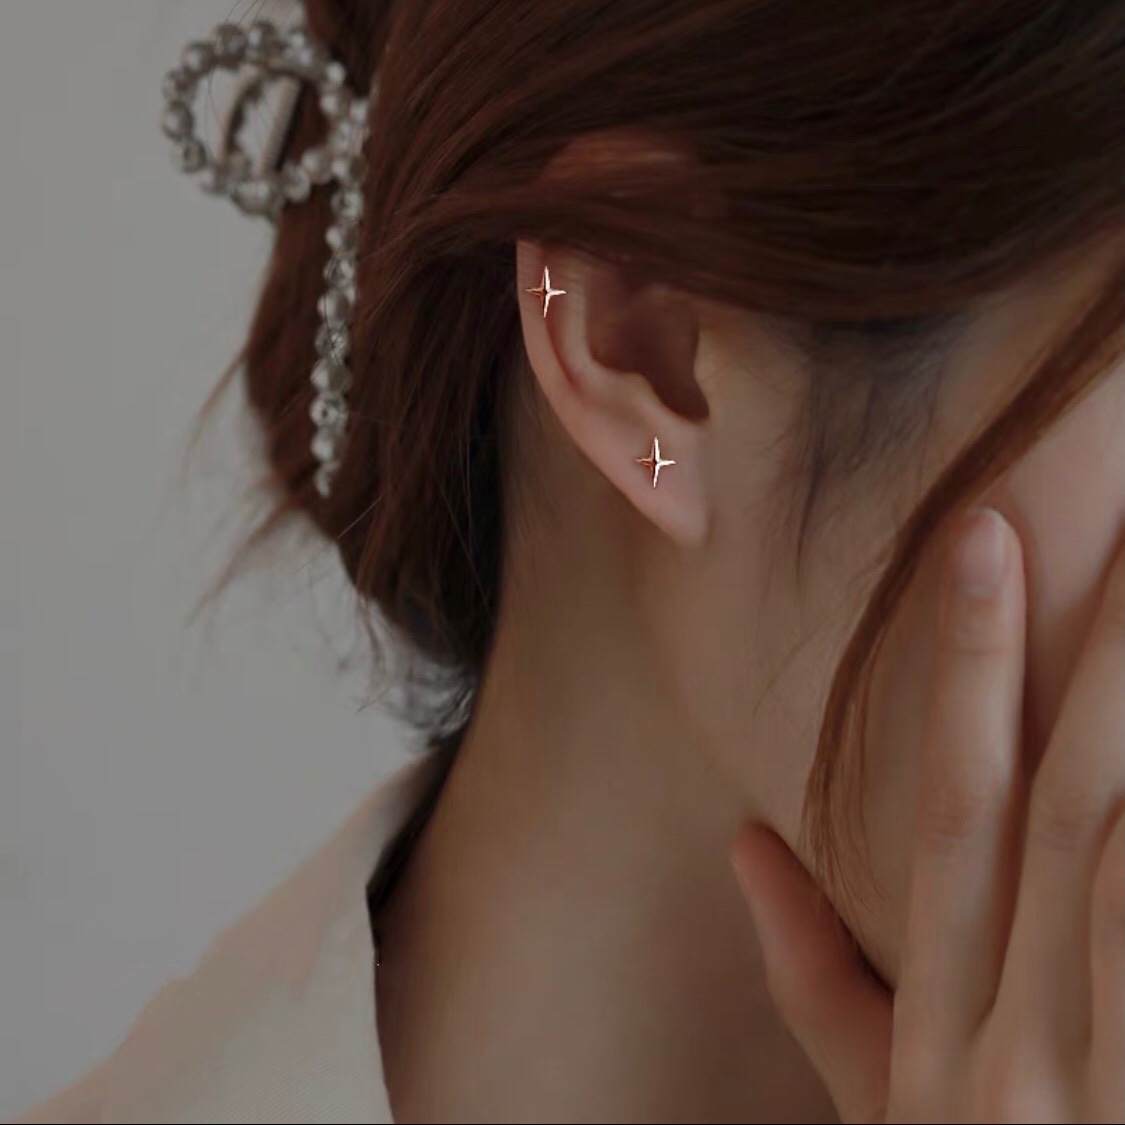 4:Rose Gold Stud Earrings 6*7.5mm